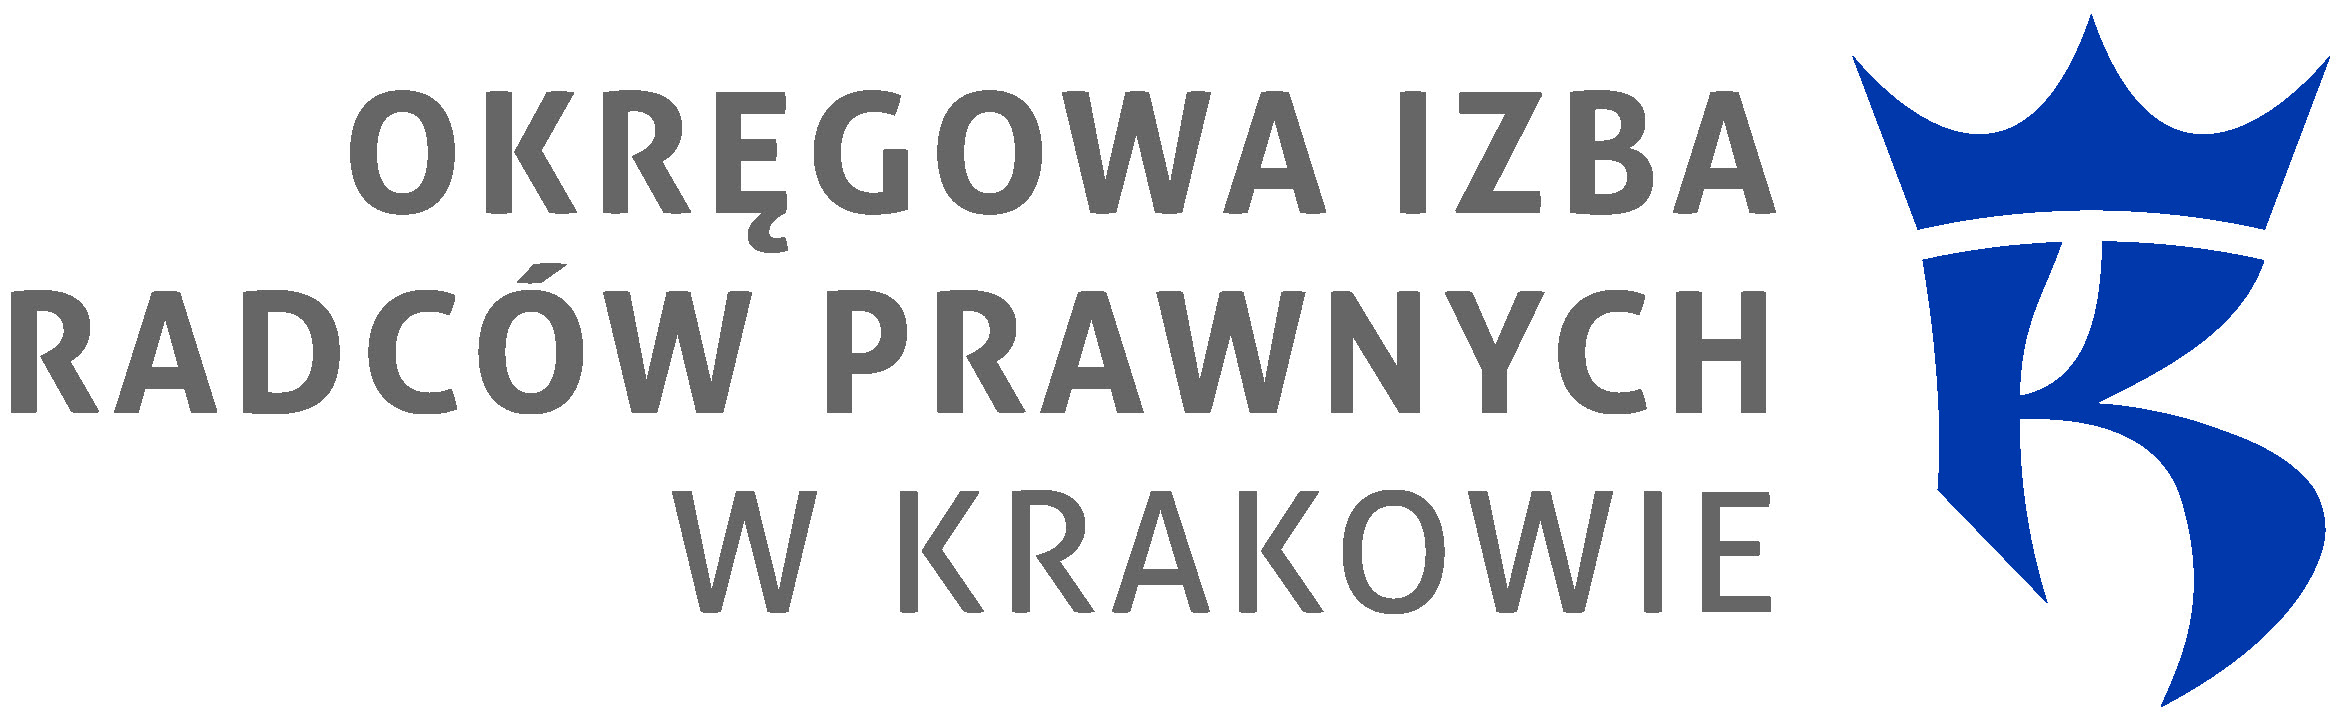 Okręgowa Izba Radców Prawnych w Krakowie